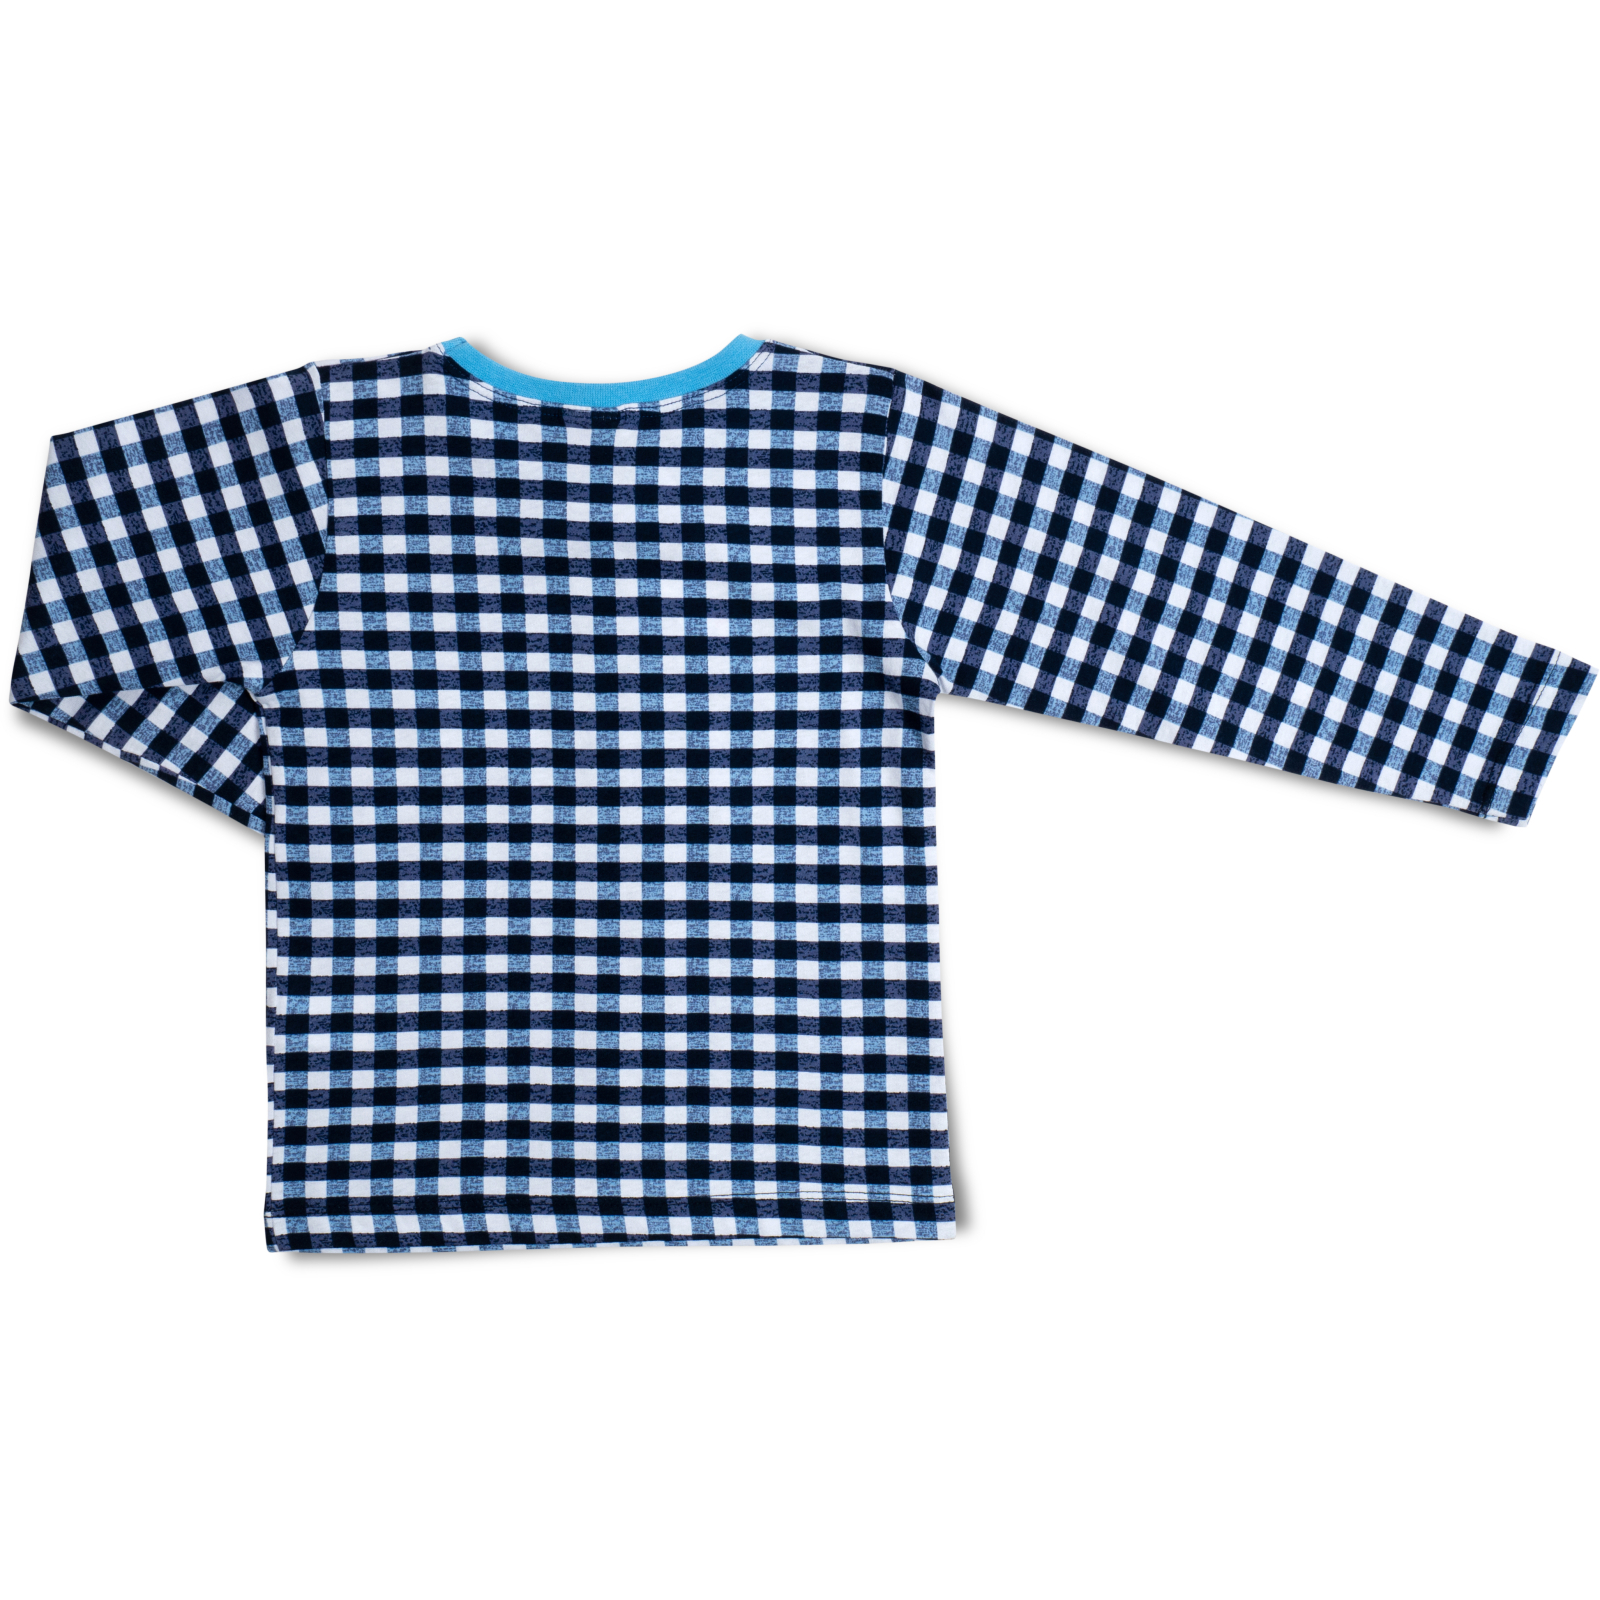 Пижама Breeze трикотажная (16030-116-blue) изображение 5